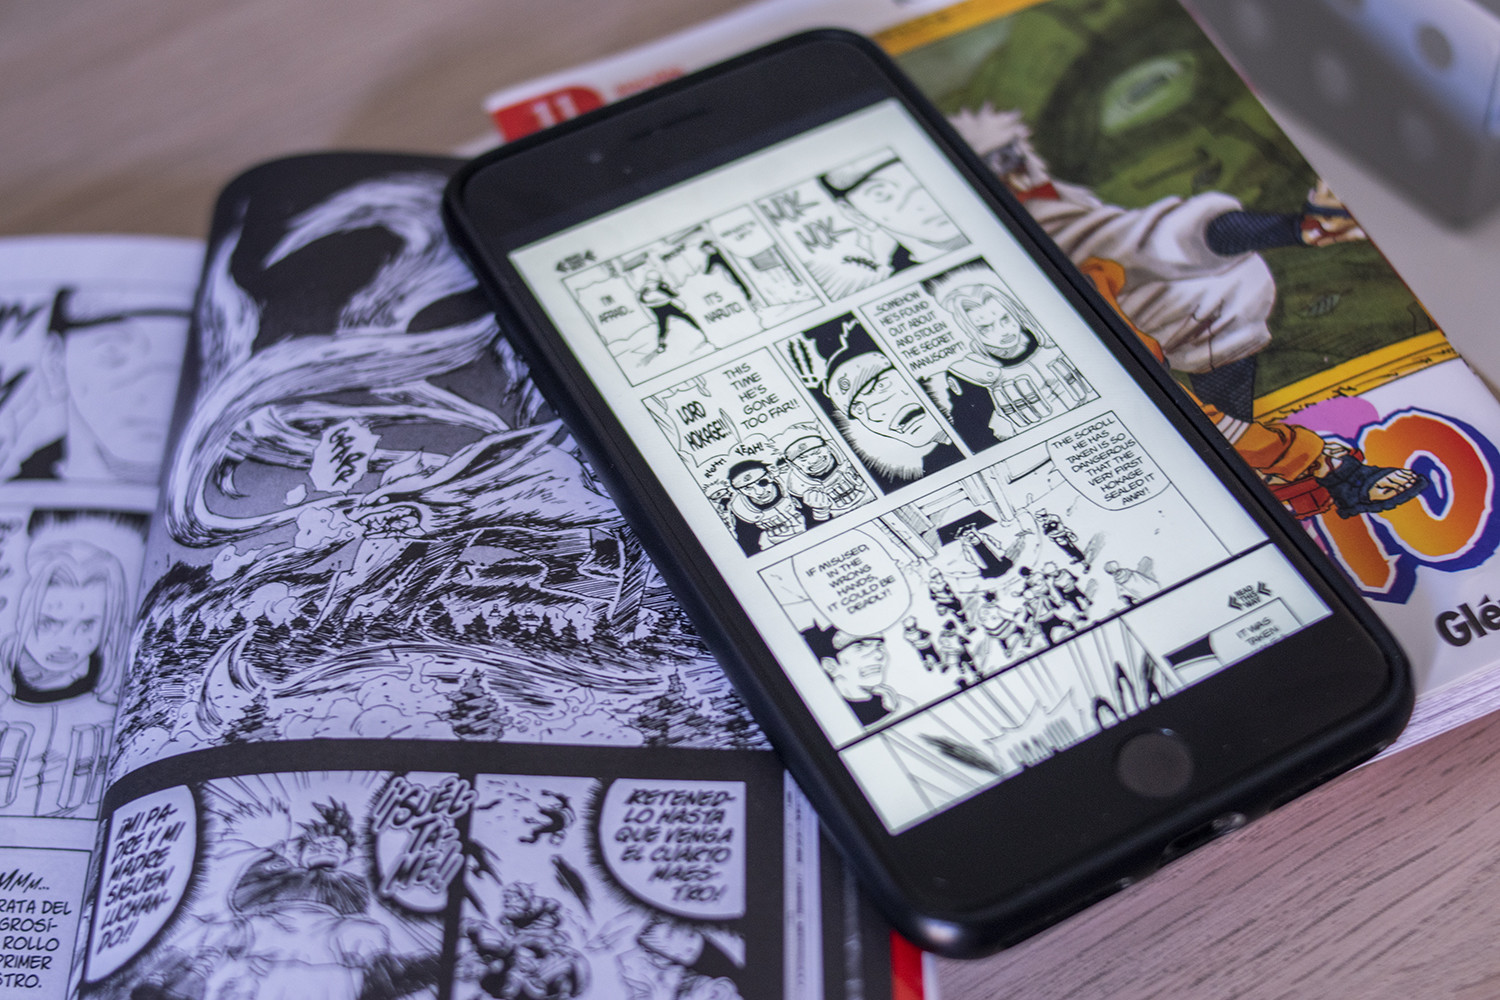 Las 15 Mejores Aplicaciones Para Leer Manga En Android Y Ios - www ...